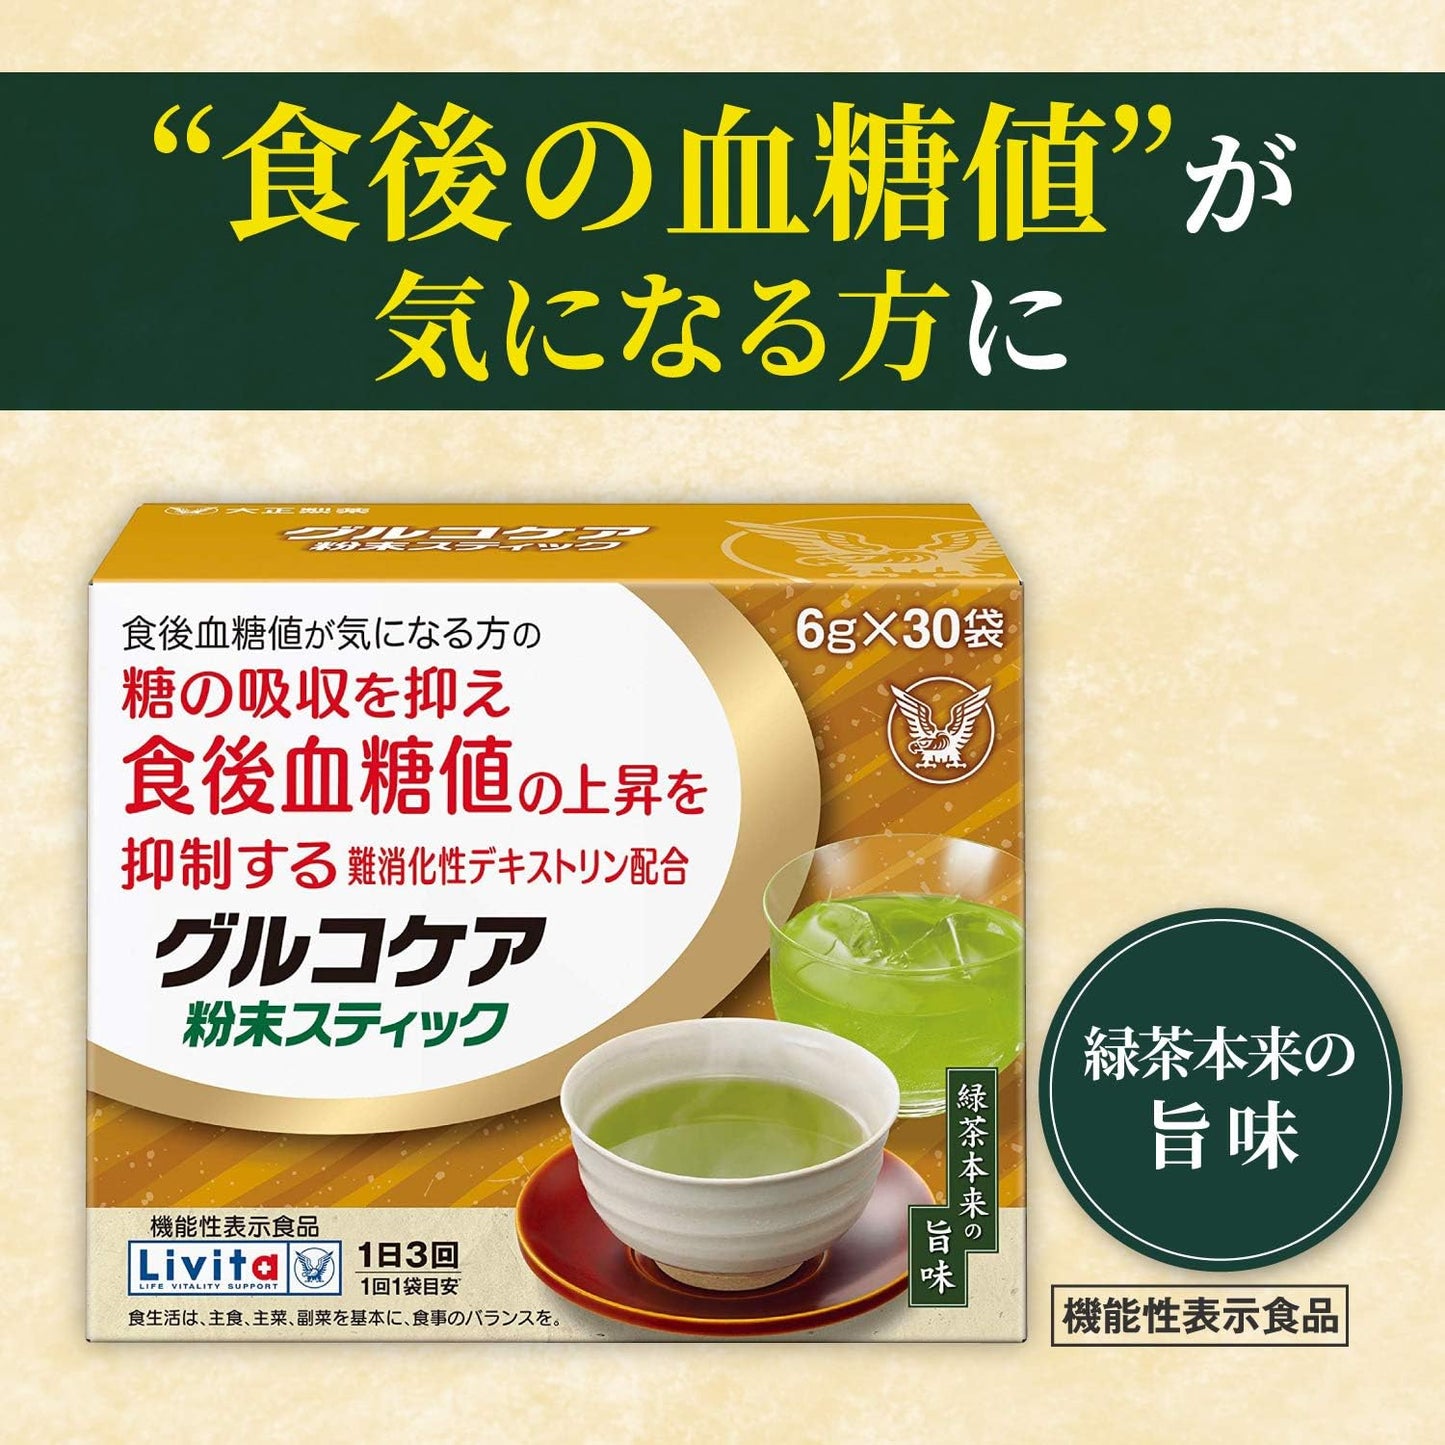 大正 Livita glucocare 茶 6g×30袋 抑制飯後血糖值上升